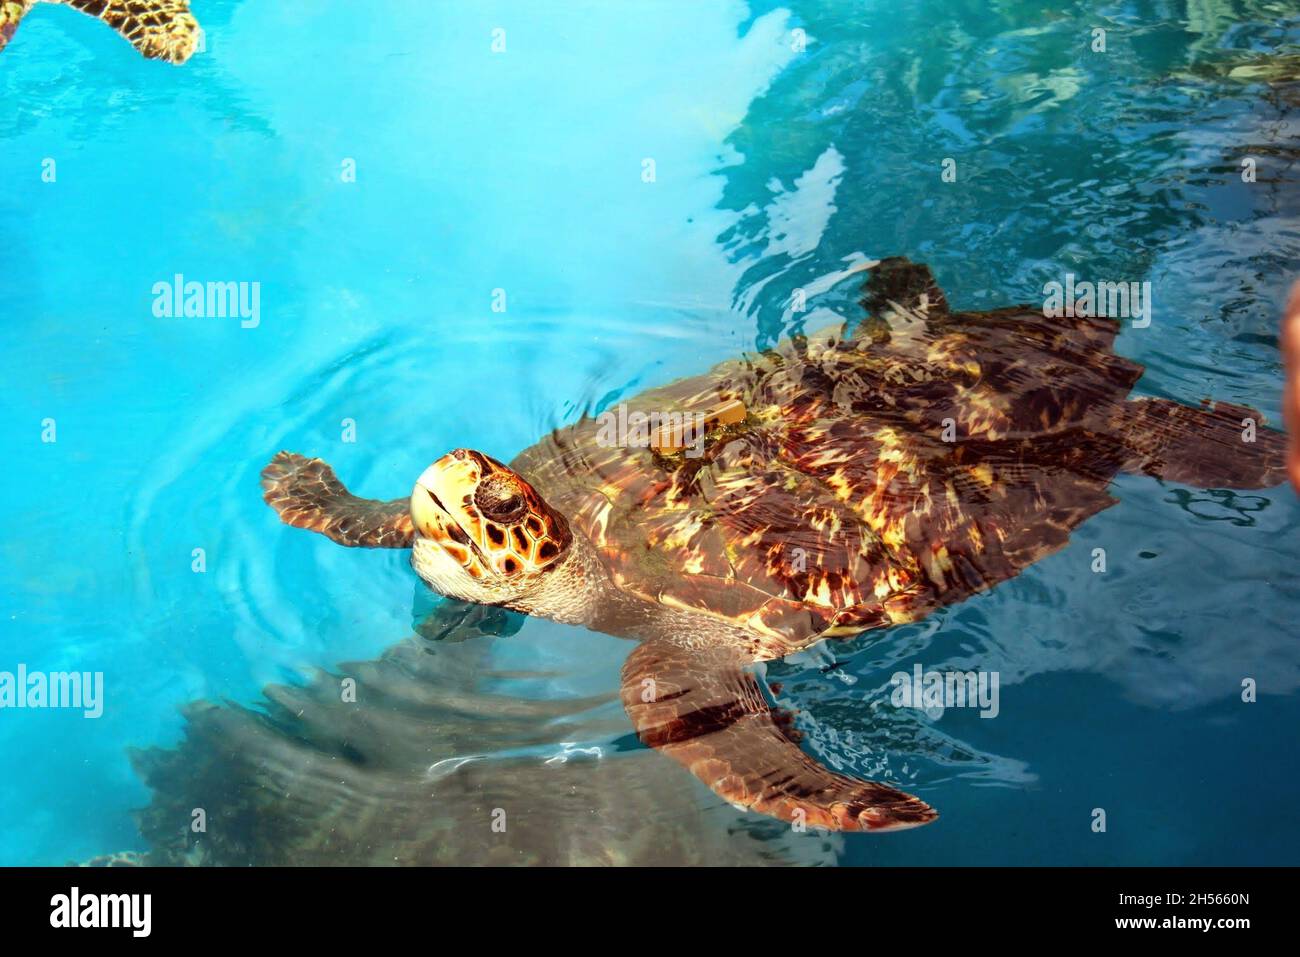 Eine Schildkröte, die in einem Artenschutzprojekt aus der Nähe schwimmt. Praia do Forte - Bahia - Brasilien. Stockfoto